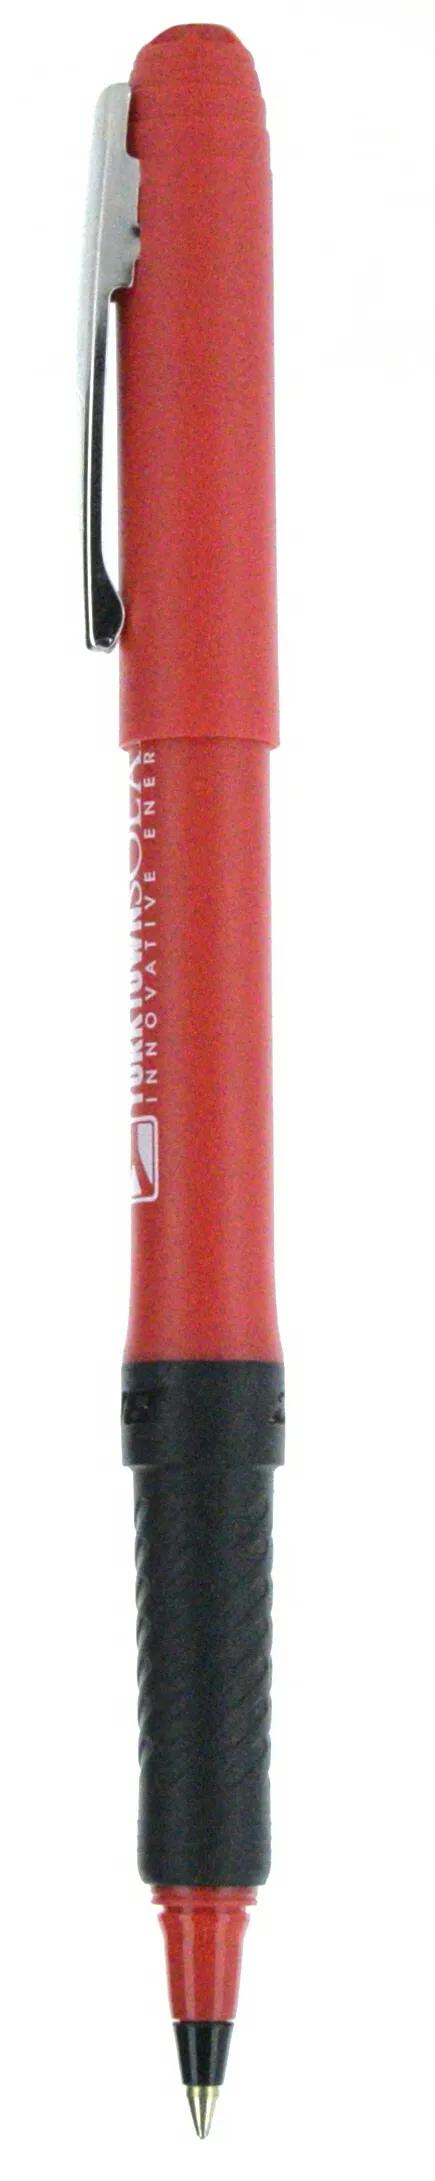 BIC® Grip Roller Pen 98 of 147